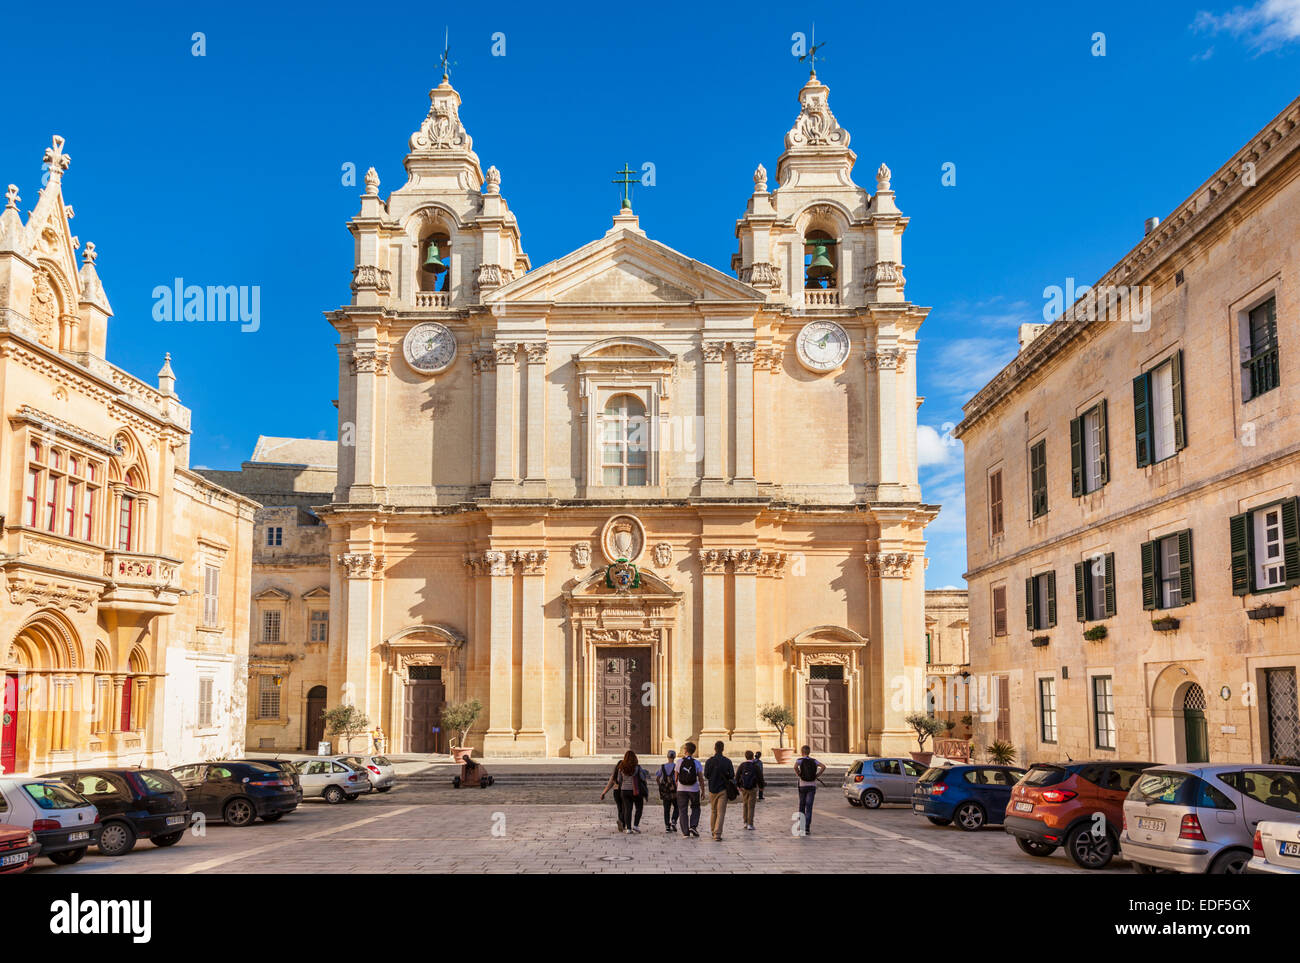 La Cathédrale St Paul et St Pauls Square avec les touristes de l'Europe Malte Mdina Banque D'Images